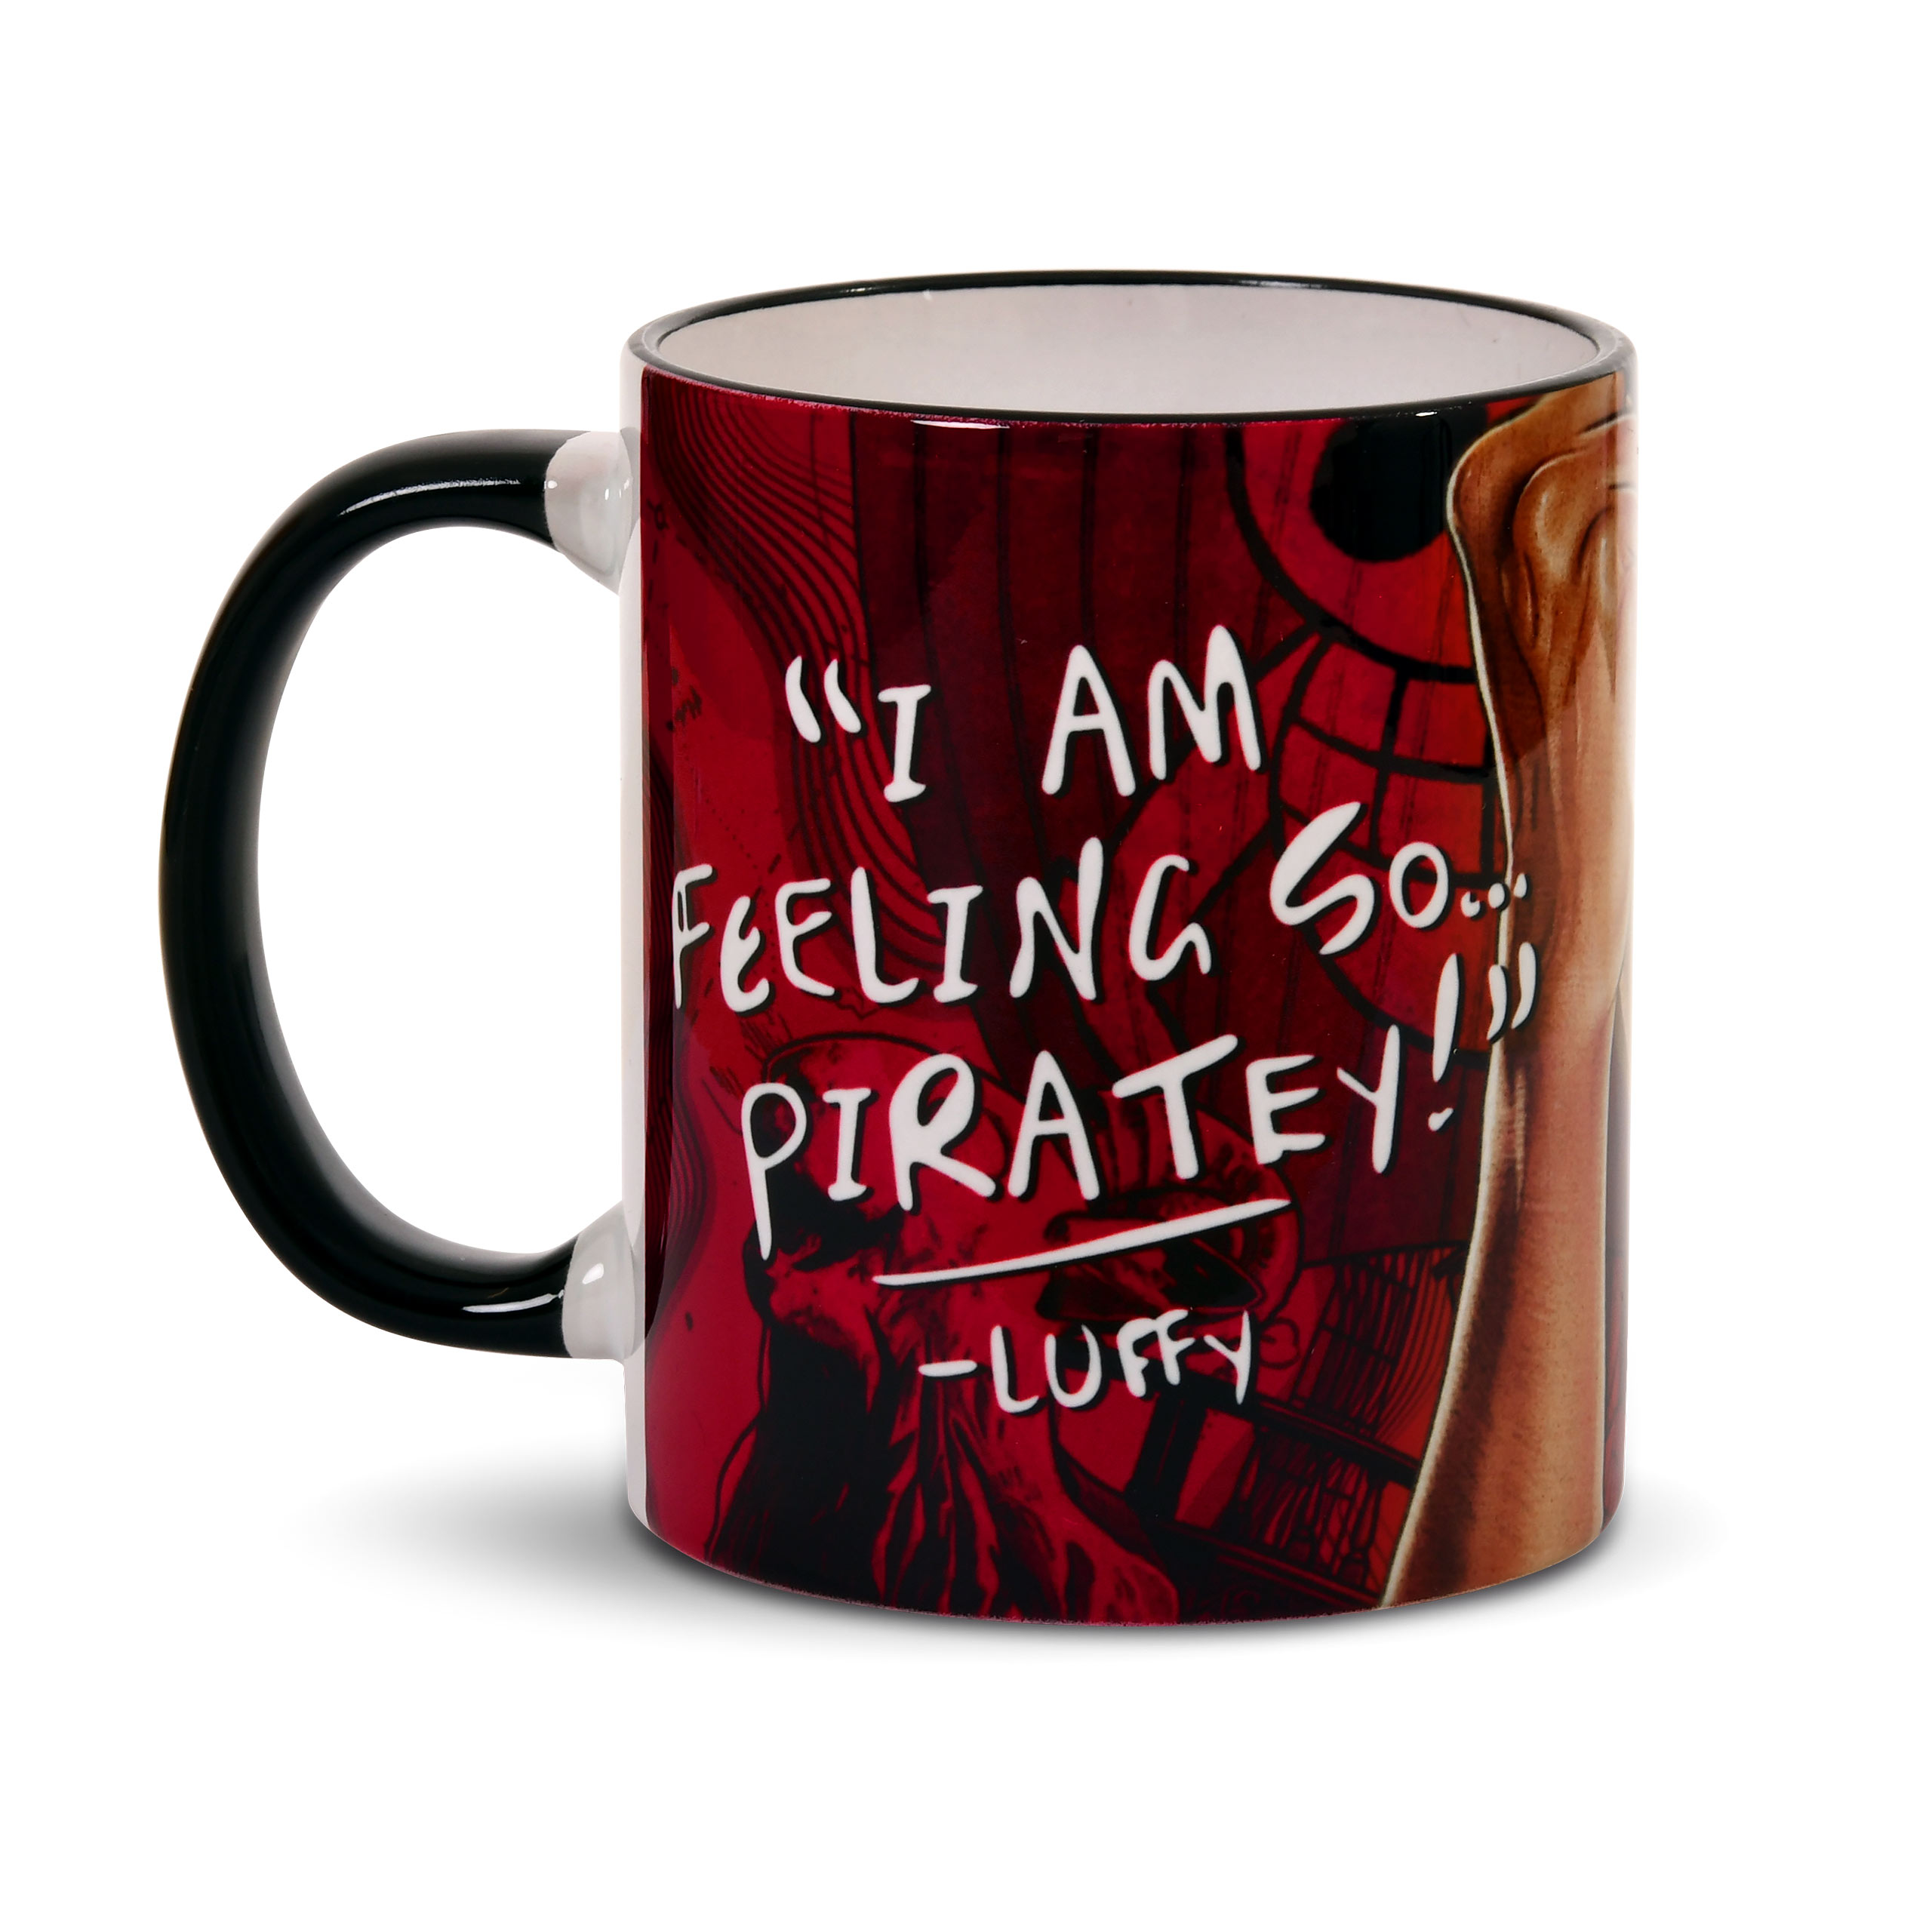 Luffy Feeling Piratey Mug - One Piece